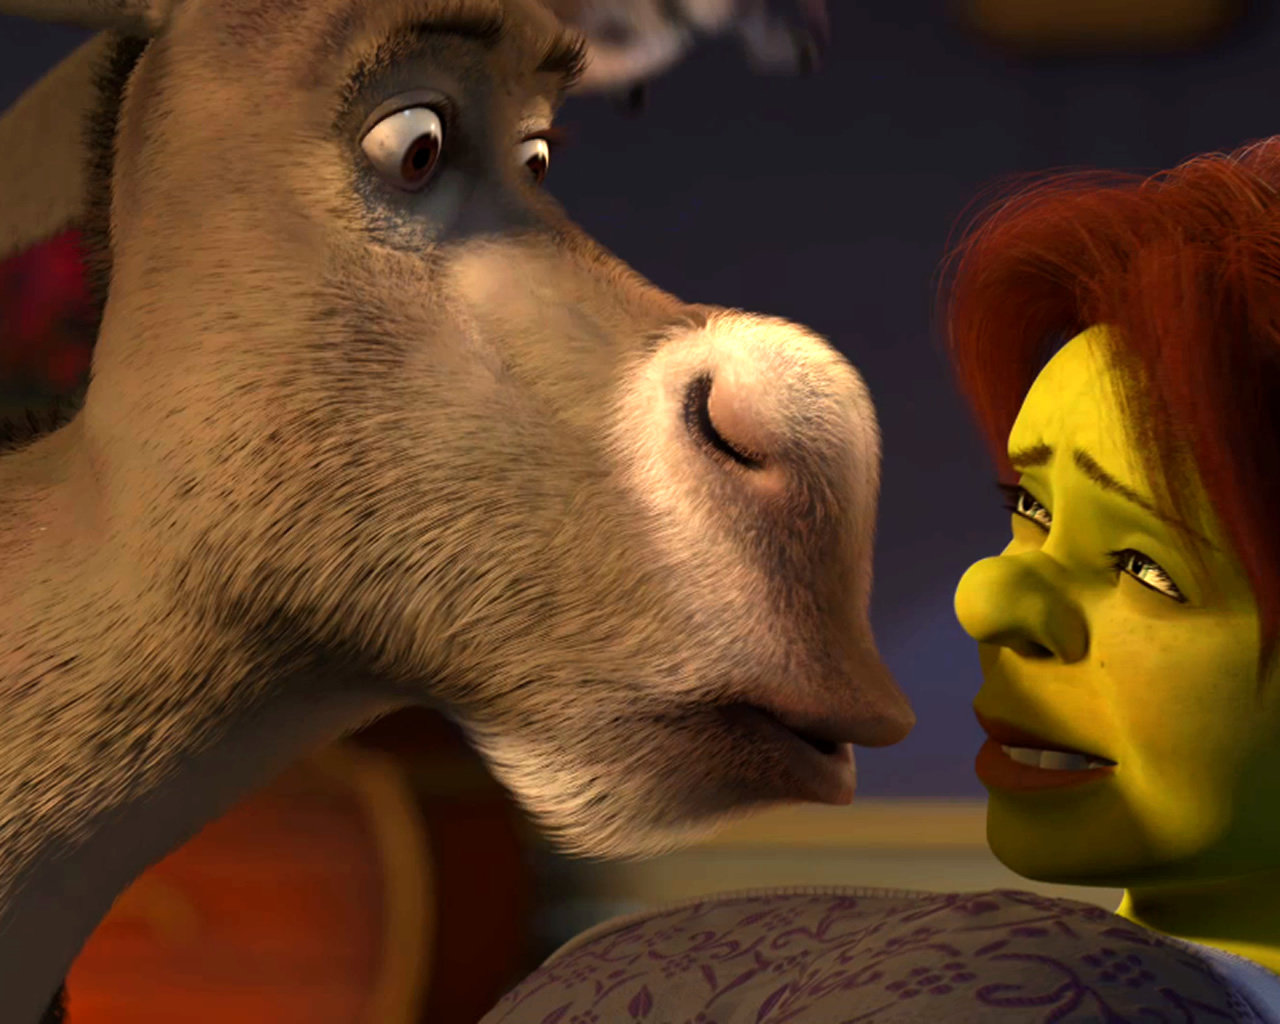 download wallpaper: Shrek 3 – Donkey en Fiona wallpaper